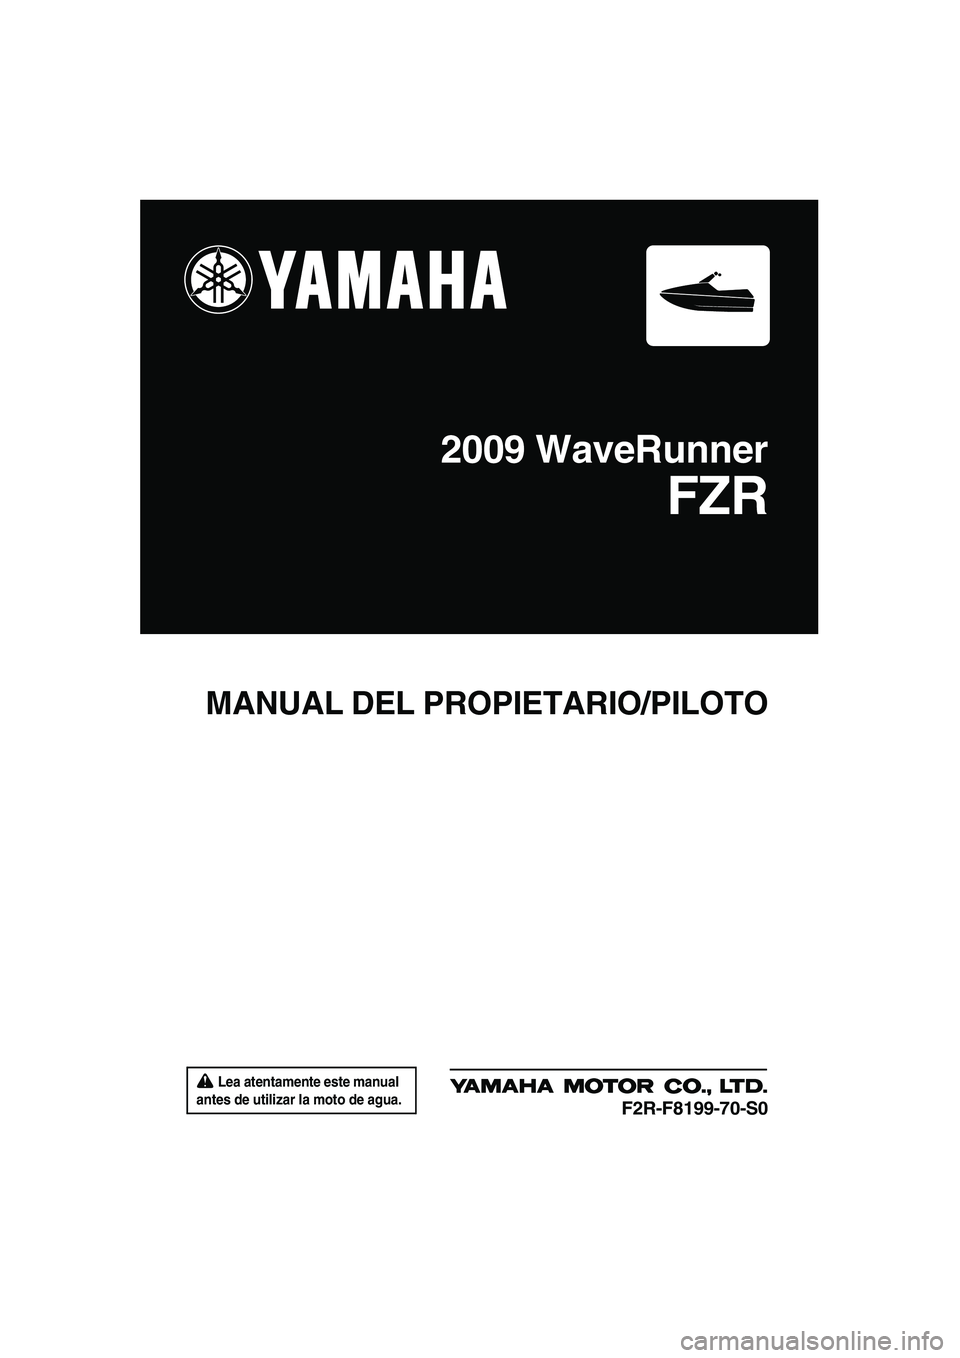 YAMAHA FZR 2009  Manuale de Empleo (in Spanish)  Lea atentamente este manual 
antes de utilizar la moto de agua.
MANUAL DEL PROPIETARIO/PILOTO
2009 WaveRunner
FZR
F2R-F8199-70-S0
UF2R70S0.book  Page 1  Friday, November 7, 2008  11:37 AM 